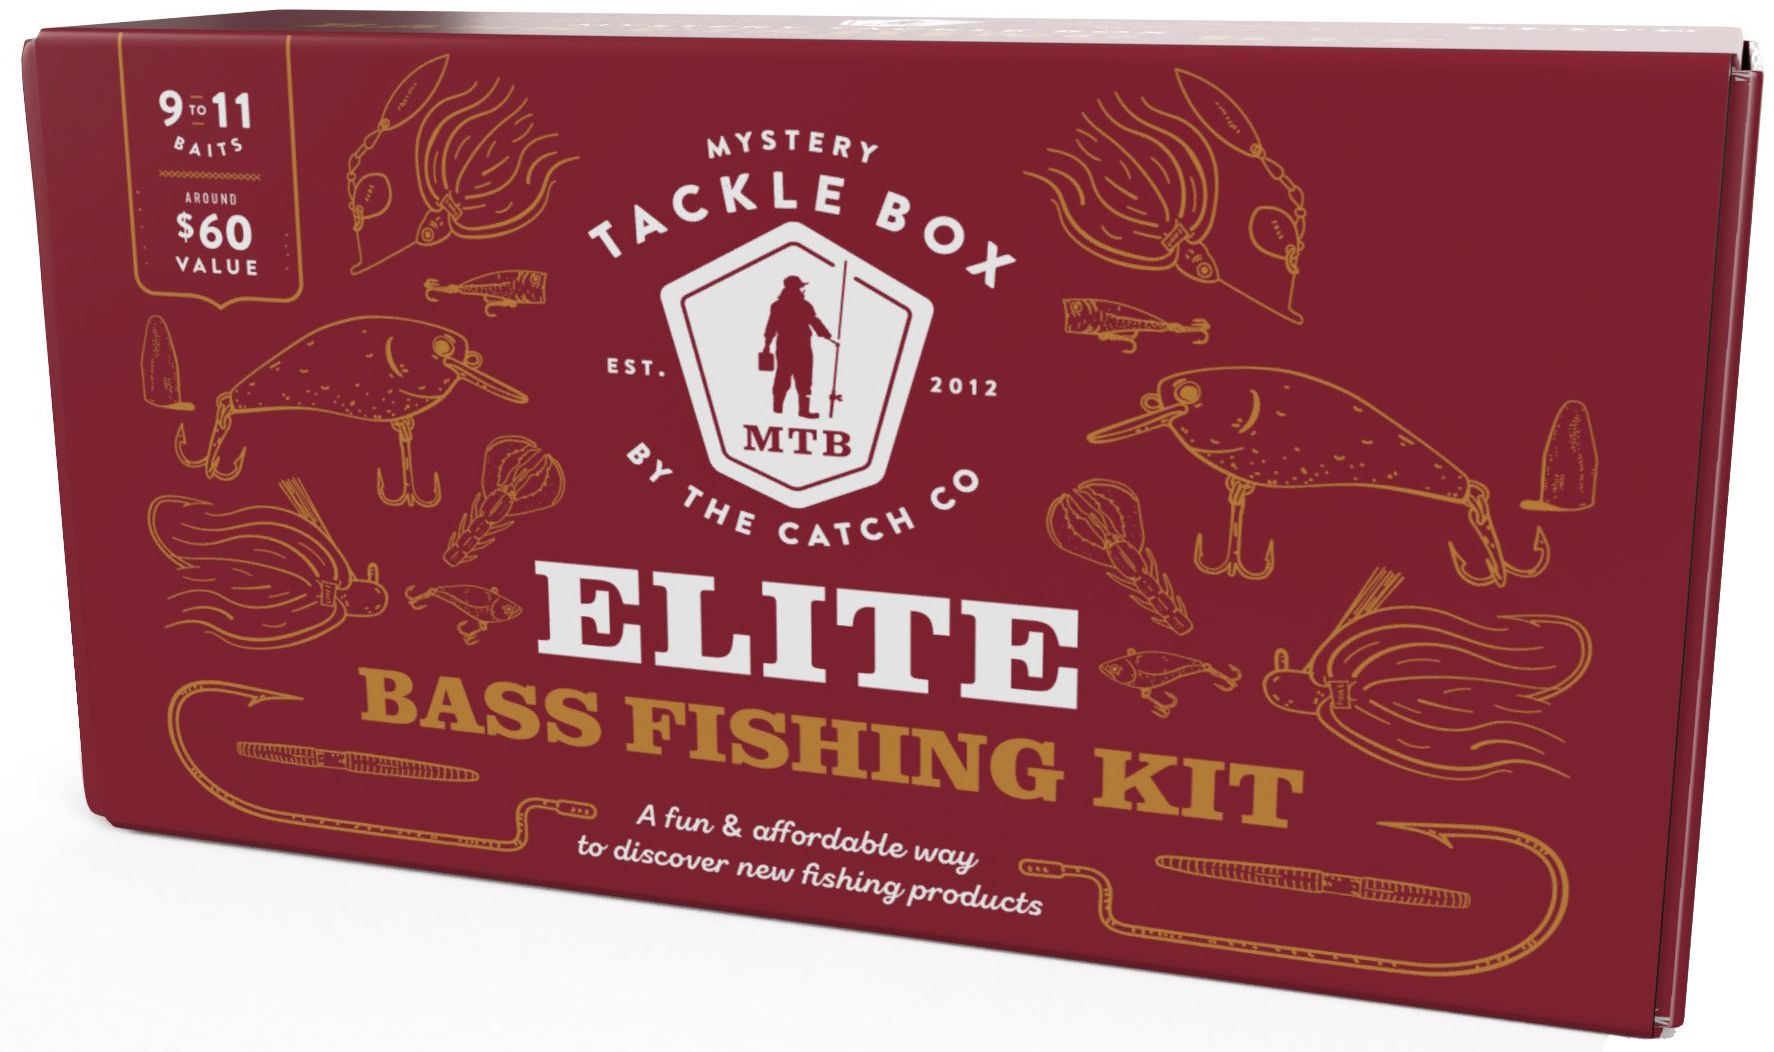 Mystery Tackle Box Juggernaut Bass Fishing Kit